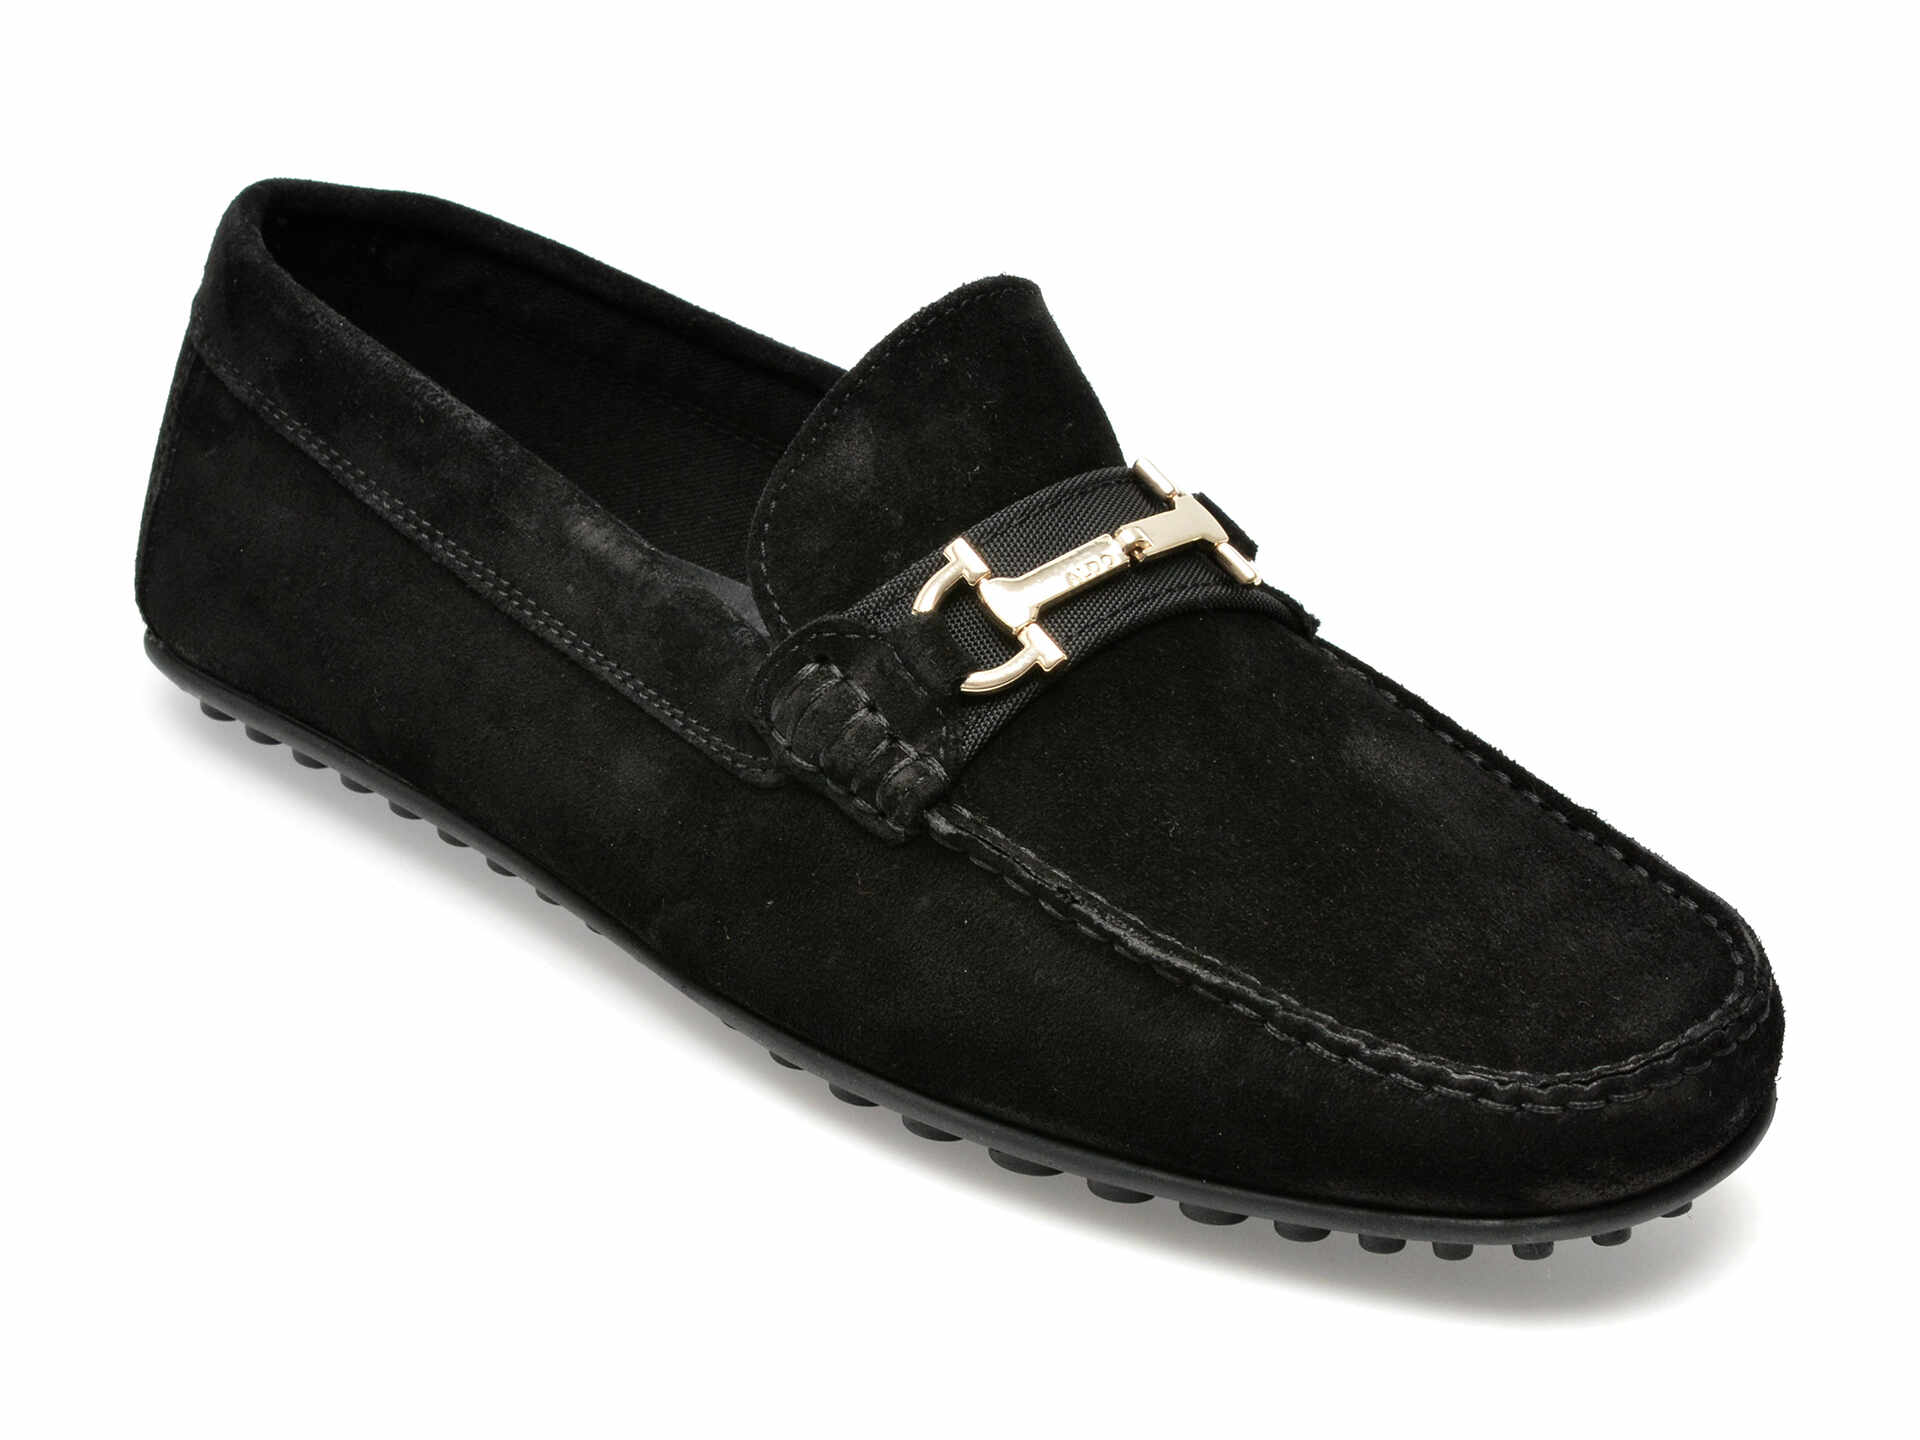 Pantofi ALDO negri, SCUDERIA001, din piele intoarsa